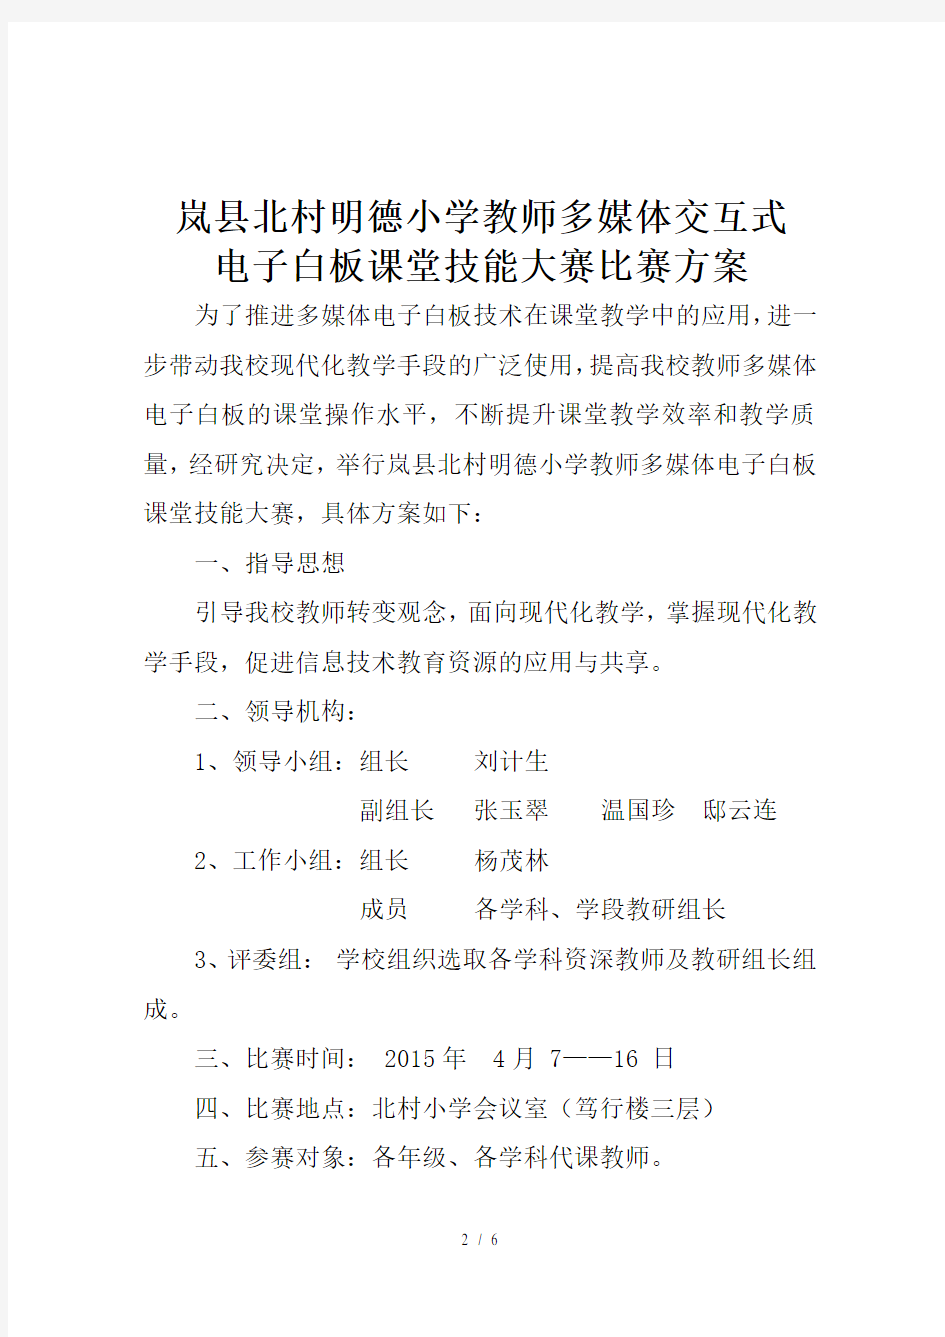 岚县北村明德小学教师多媒体交互式电子白板课堂技能大赛比赛方案